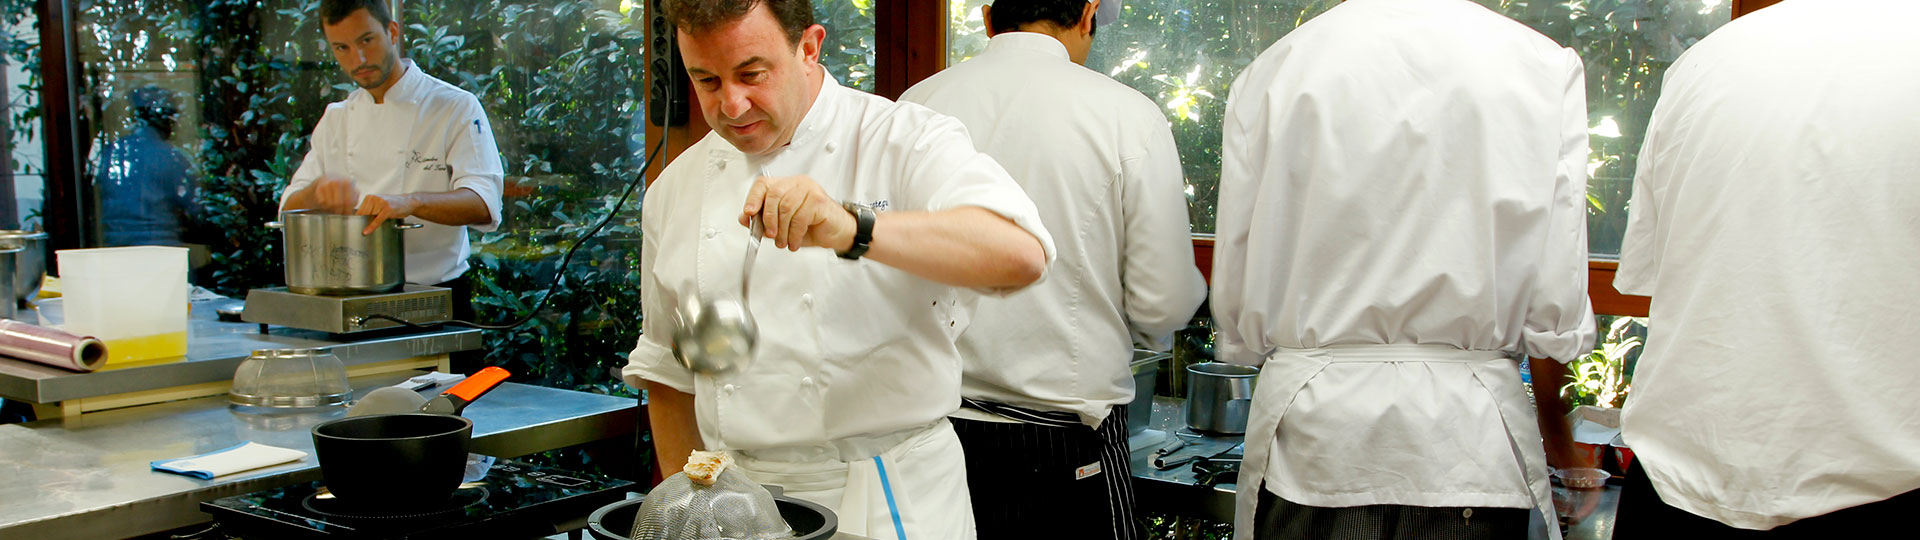 Hiszpański szef kuchni Martín Berasategui przygotowujący posiłek